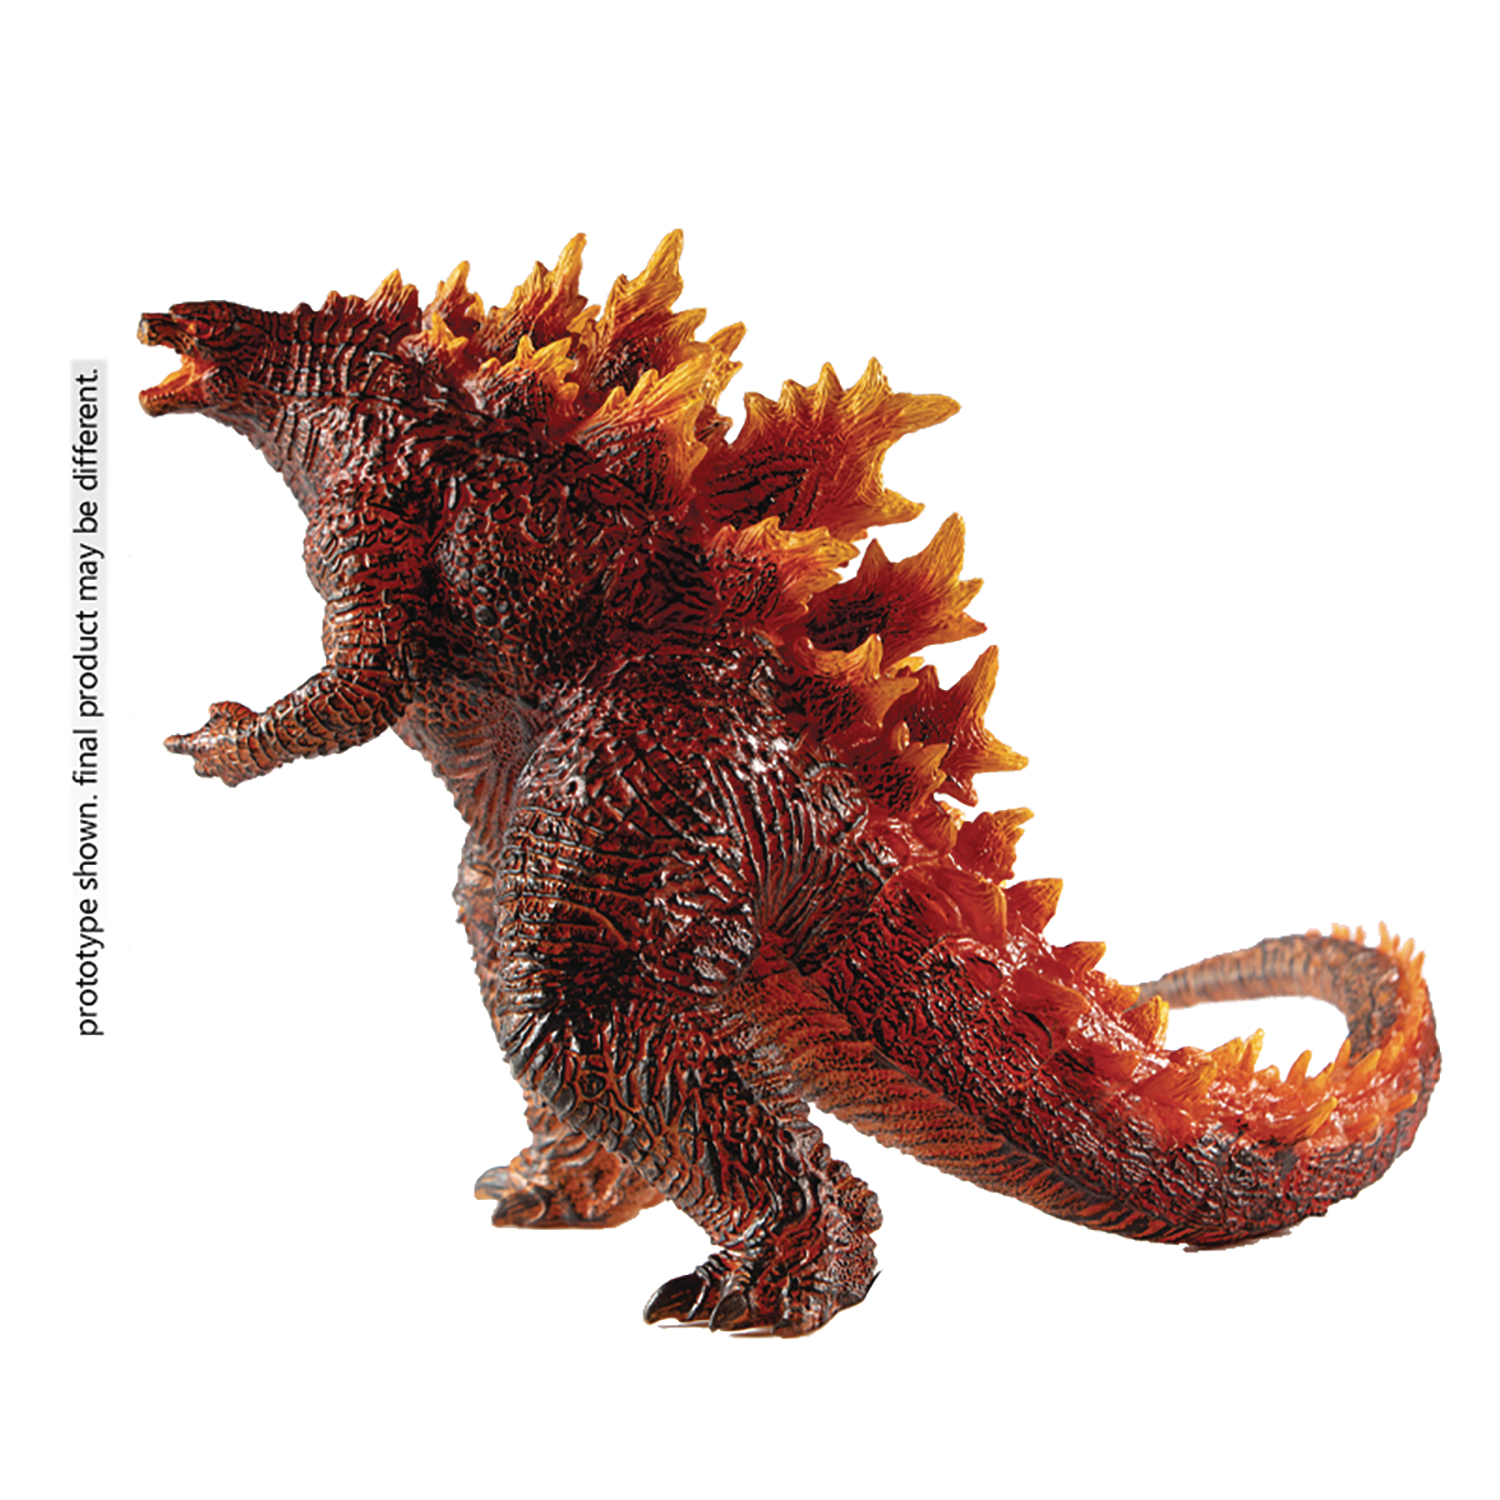 Godzilla King Monsters Stylist Burning Godzilla Px Action Figure (Net)